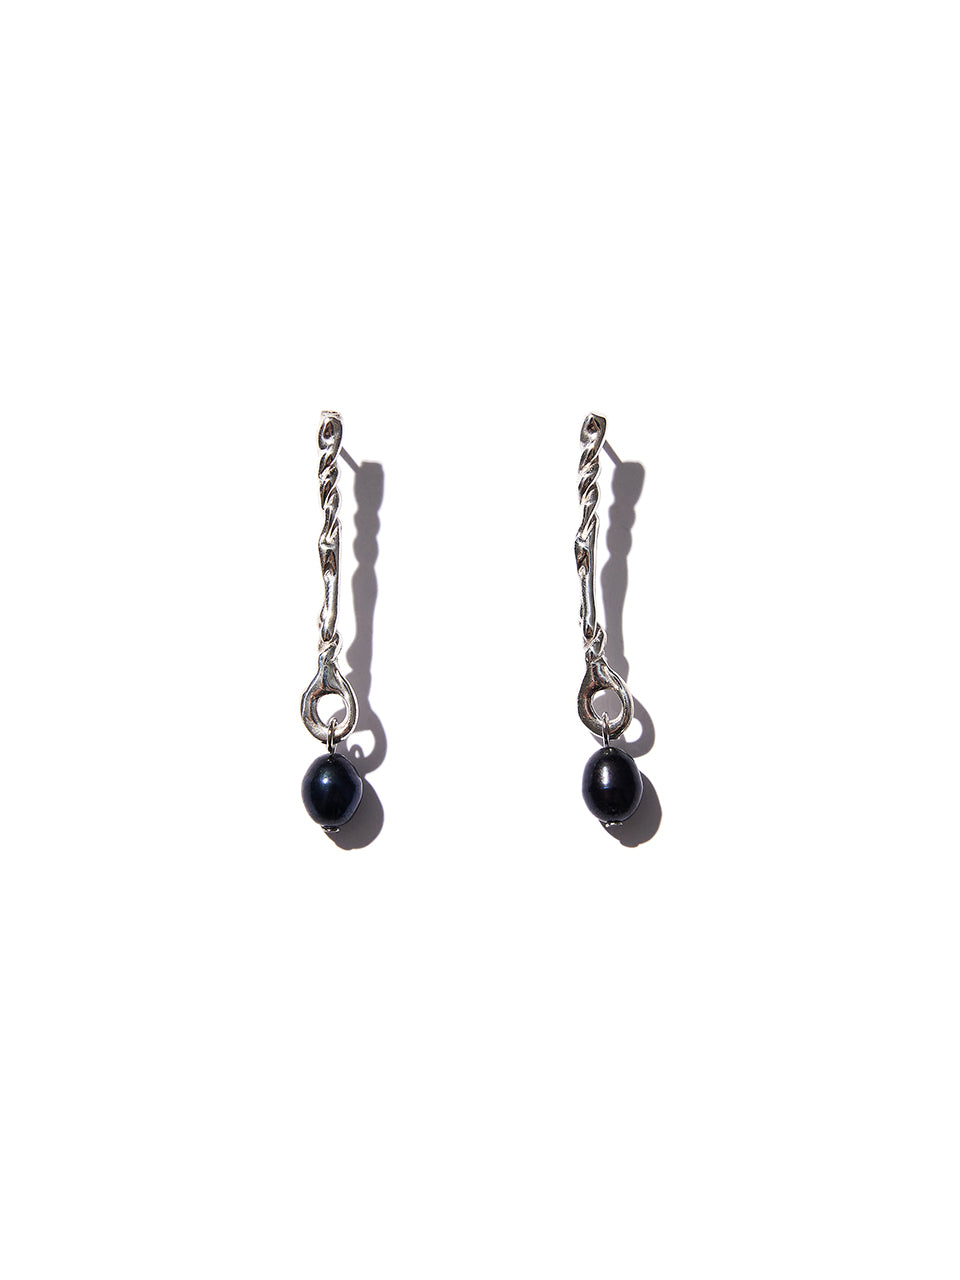 Knot earrings 002 (silver)